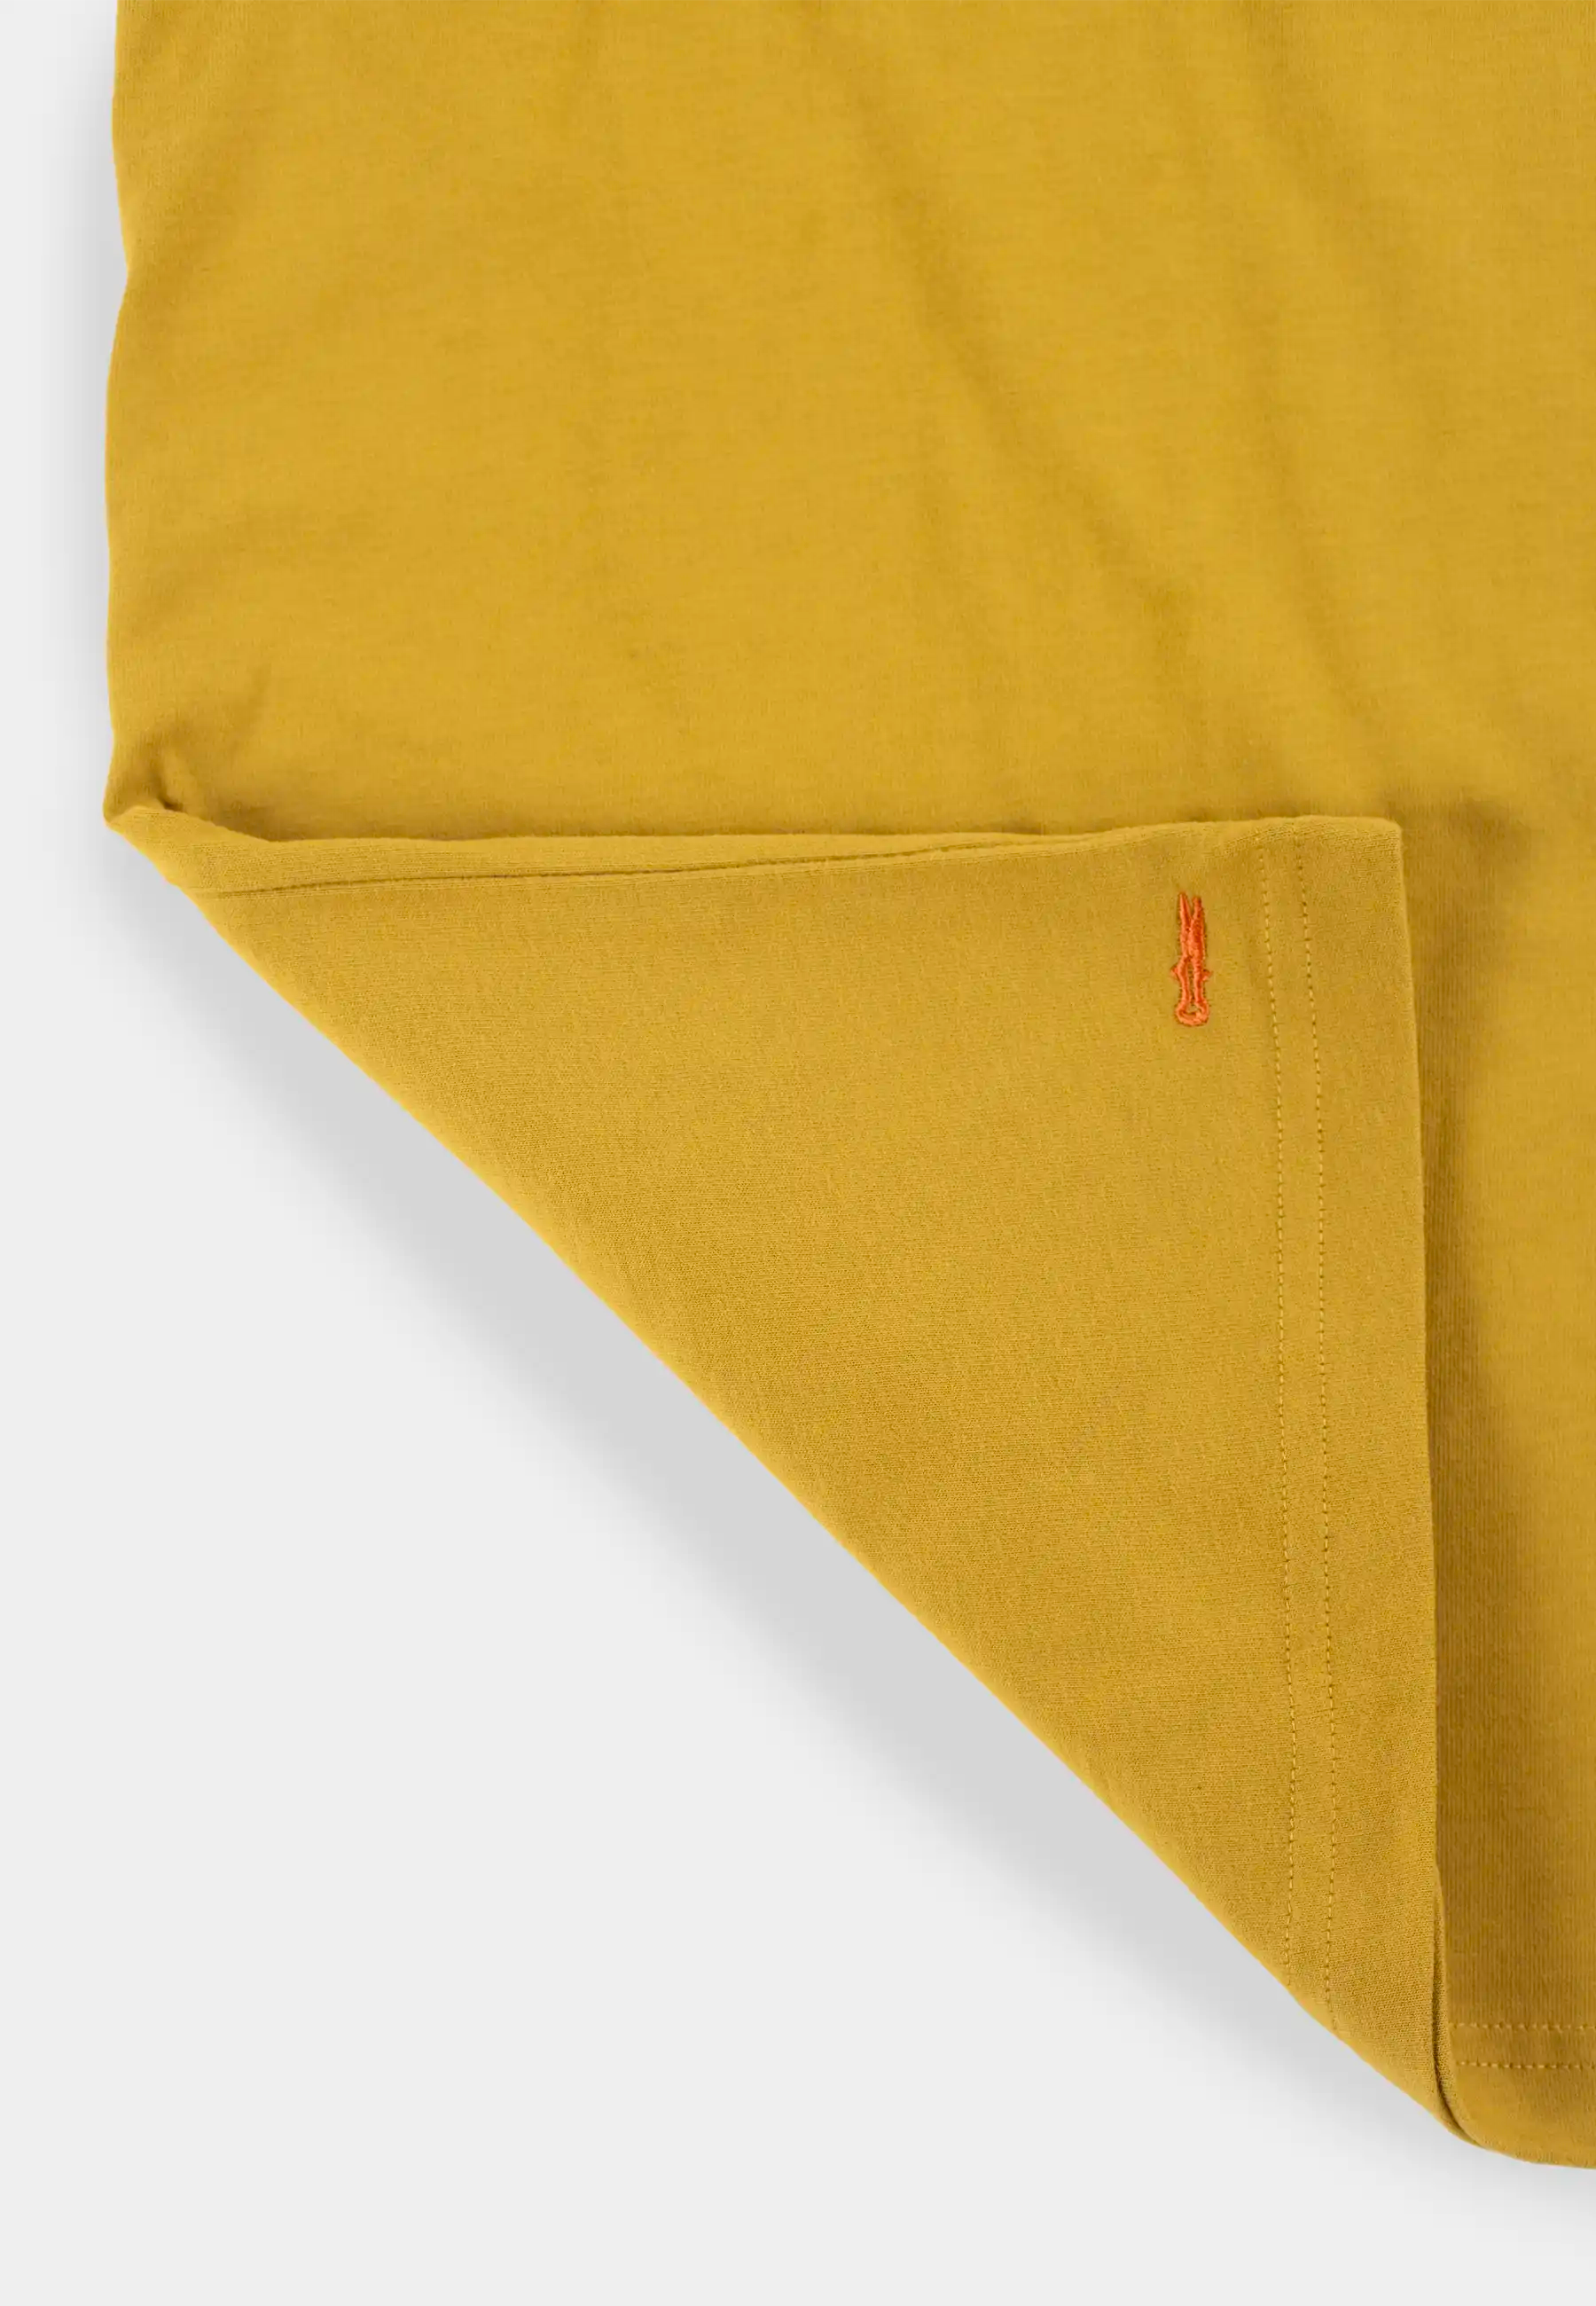 Mico high collar t-shirt- Mustard